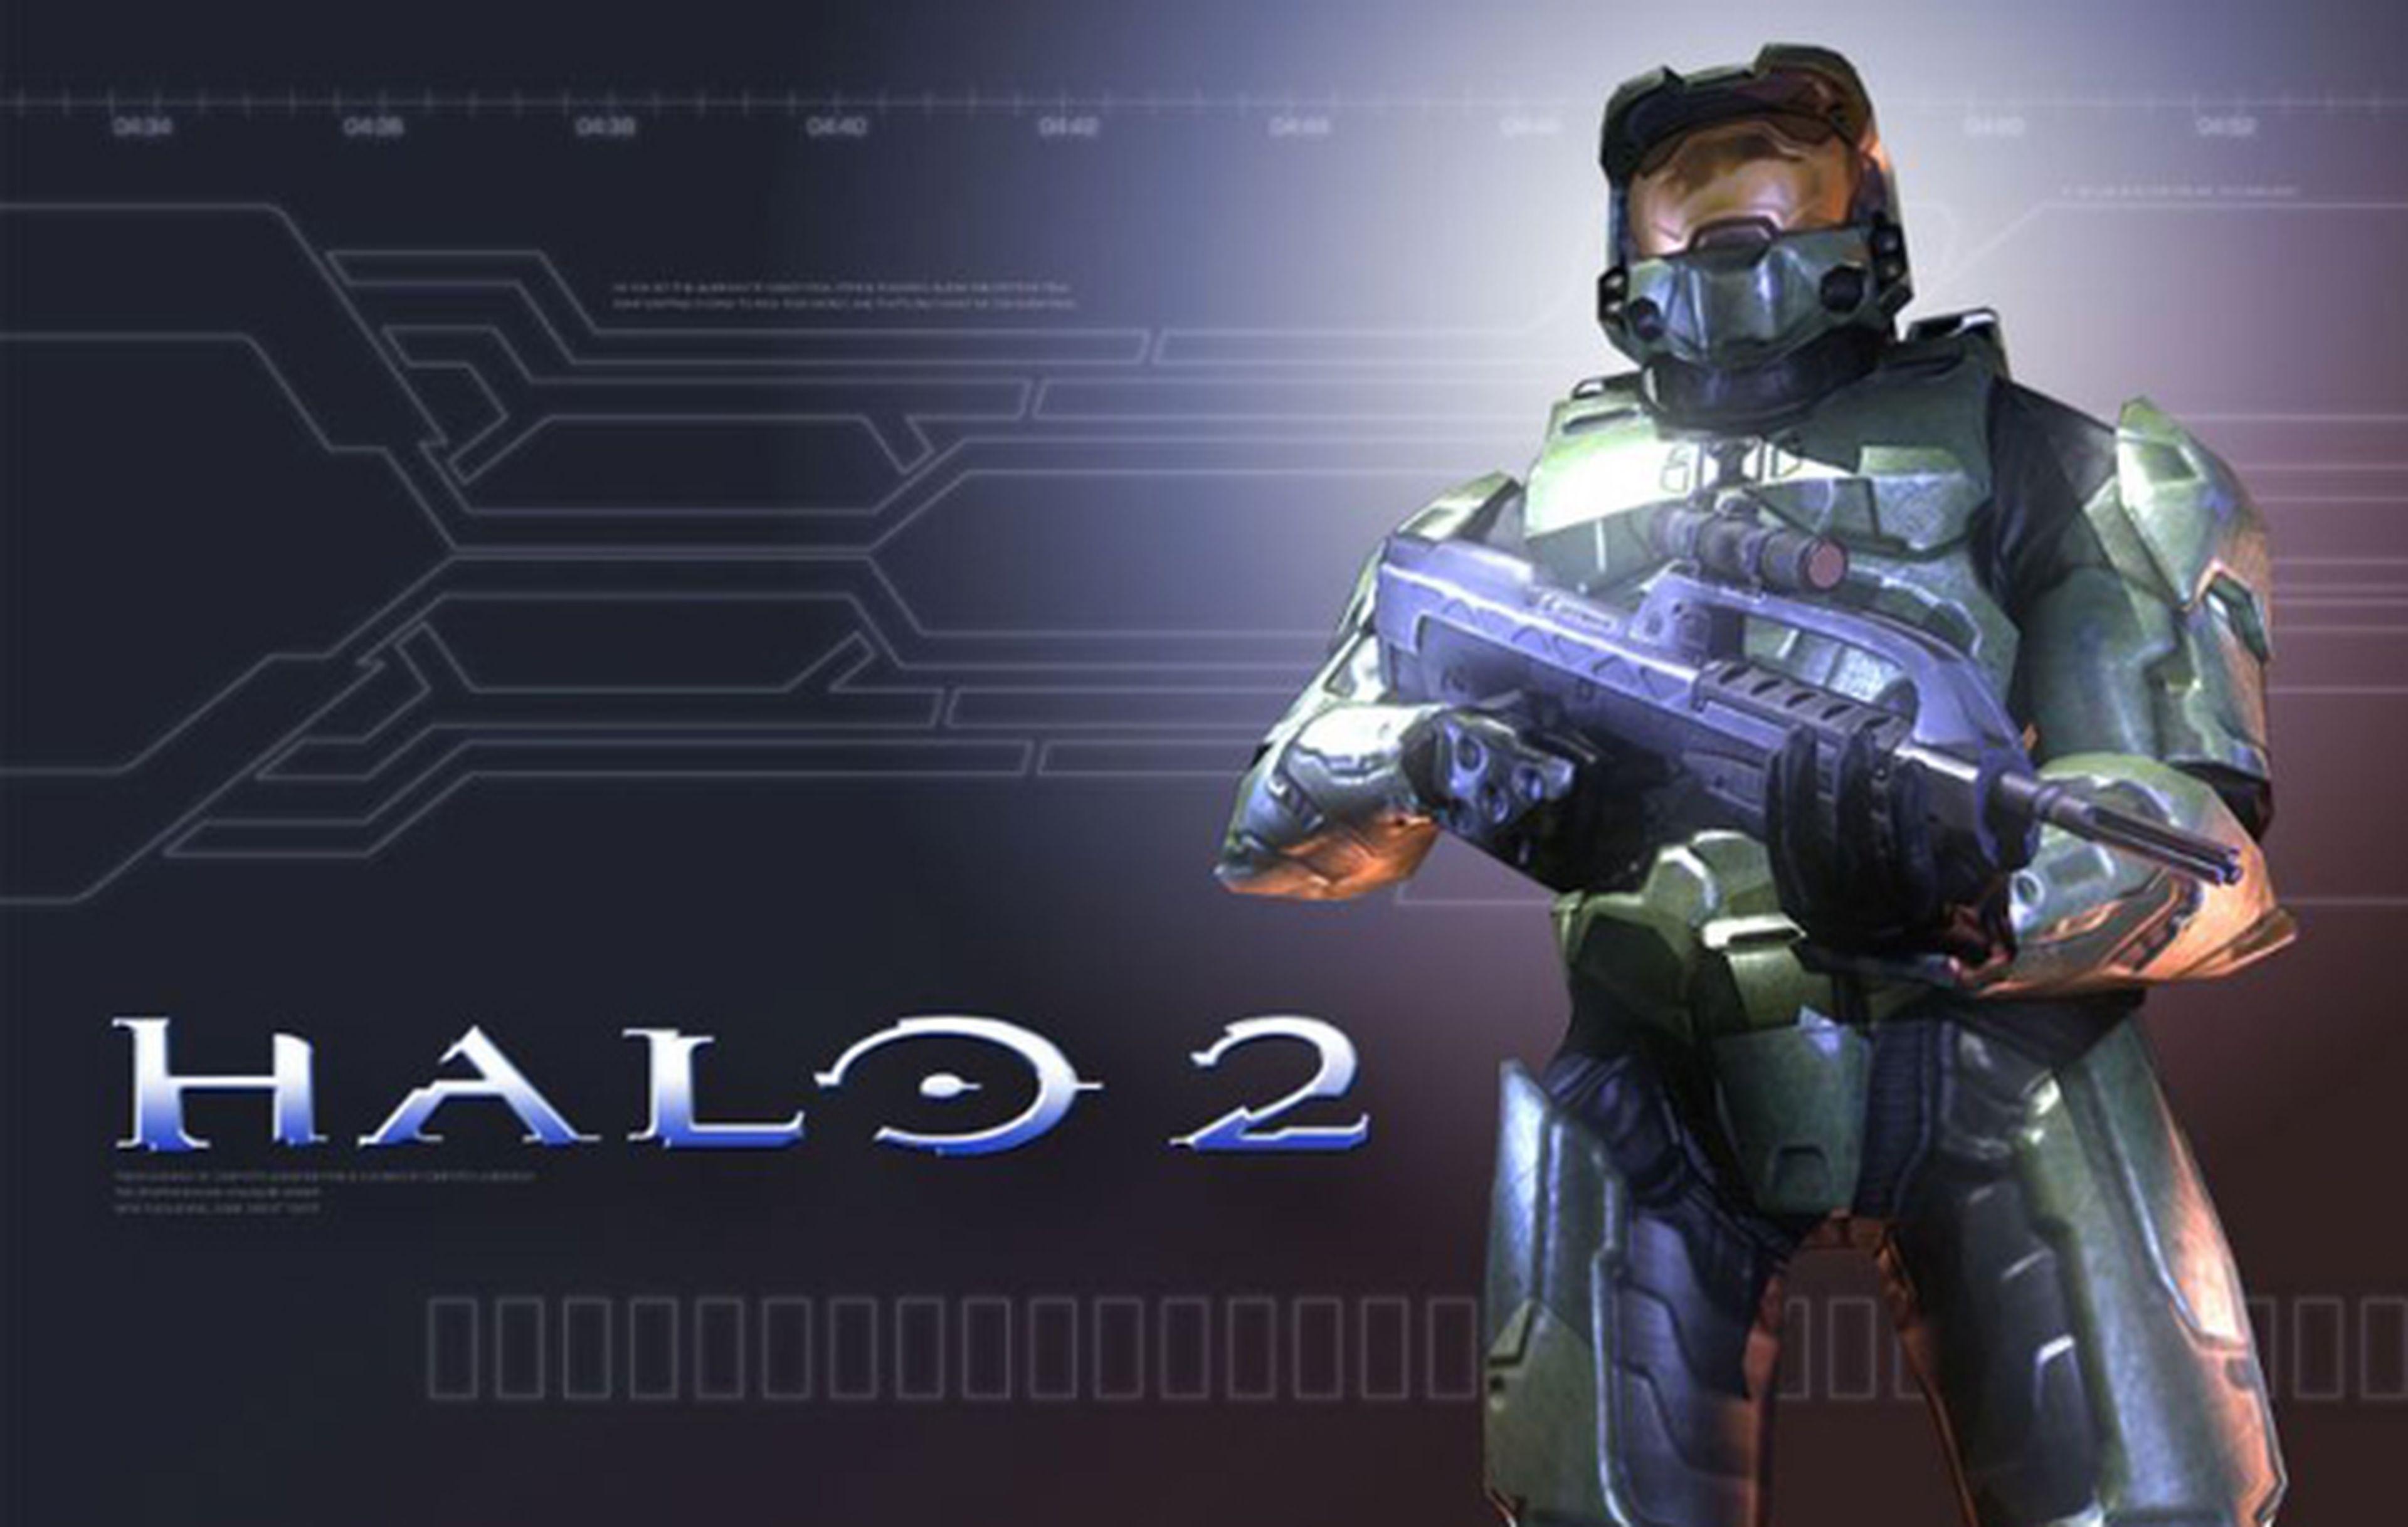 Microsoft cerrará los servidores de Halo 2 en PC